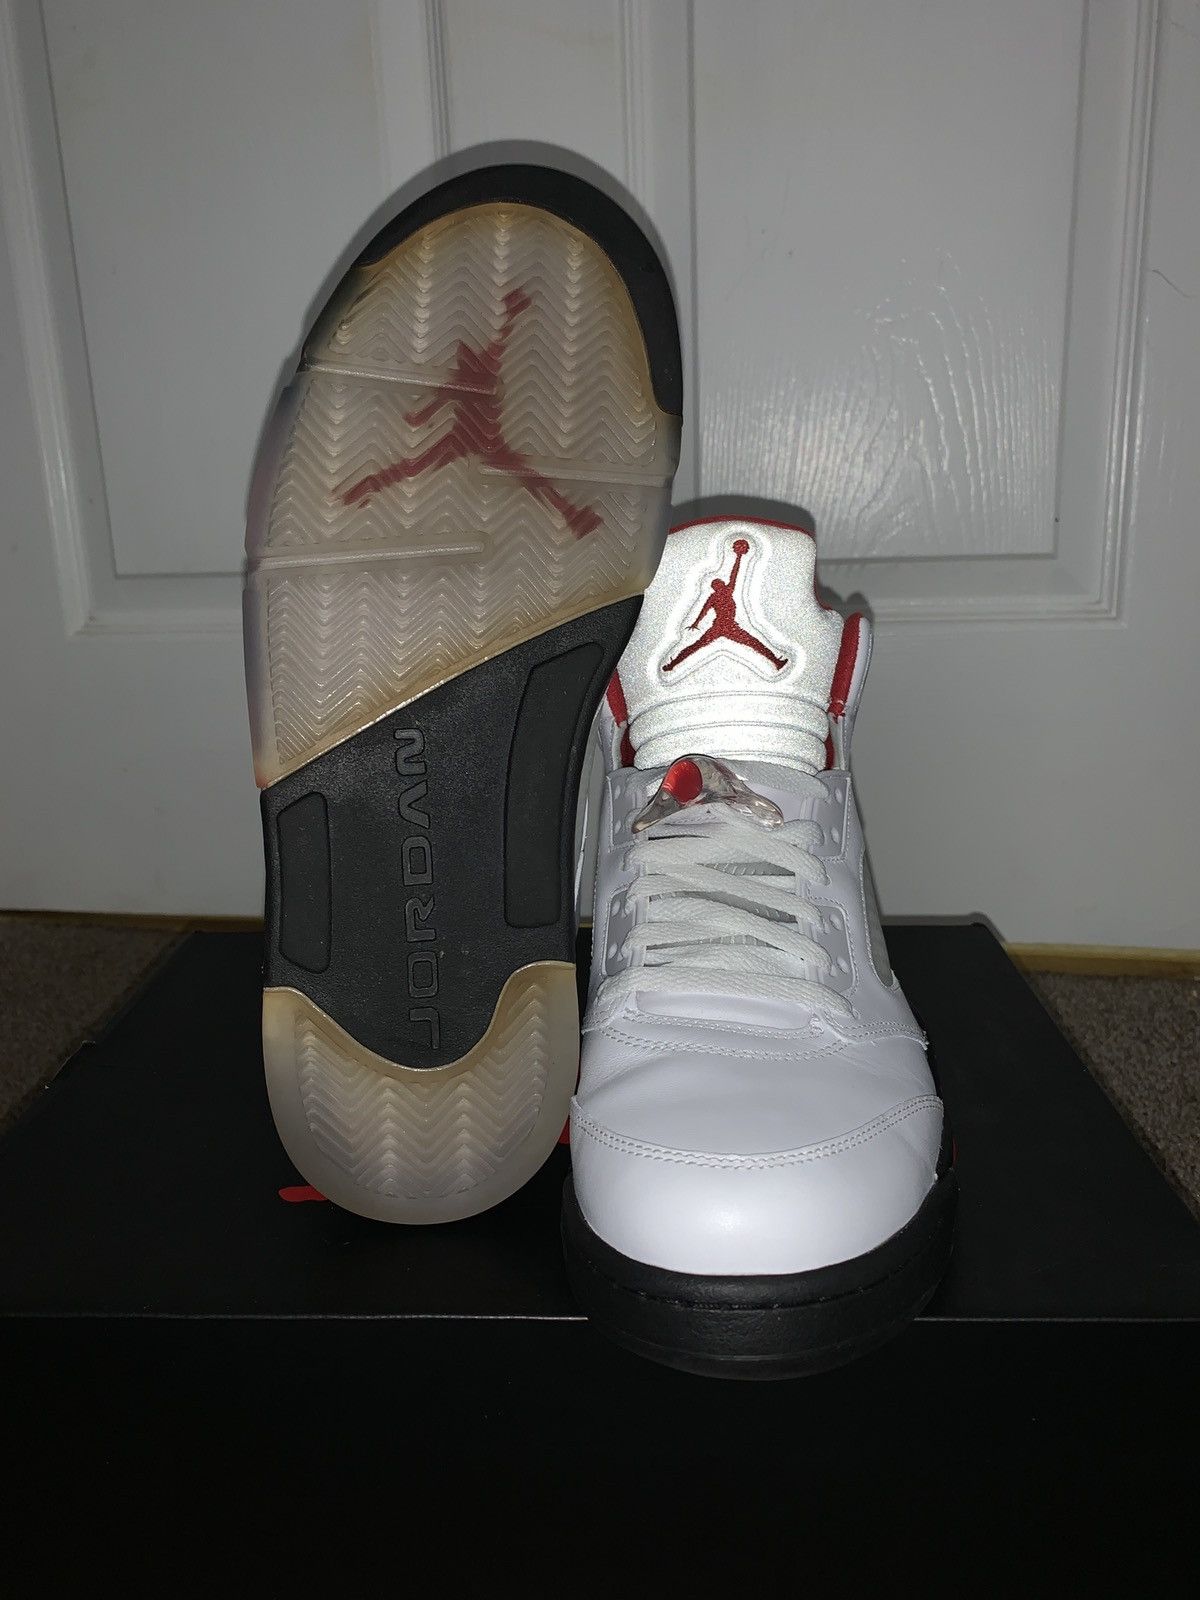 Nike Jordan Retro Fire Red 5s Size US 9.5 / EU 42-43 - 3 Thumbnail